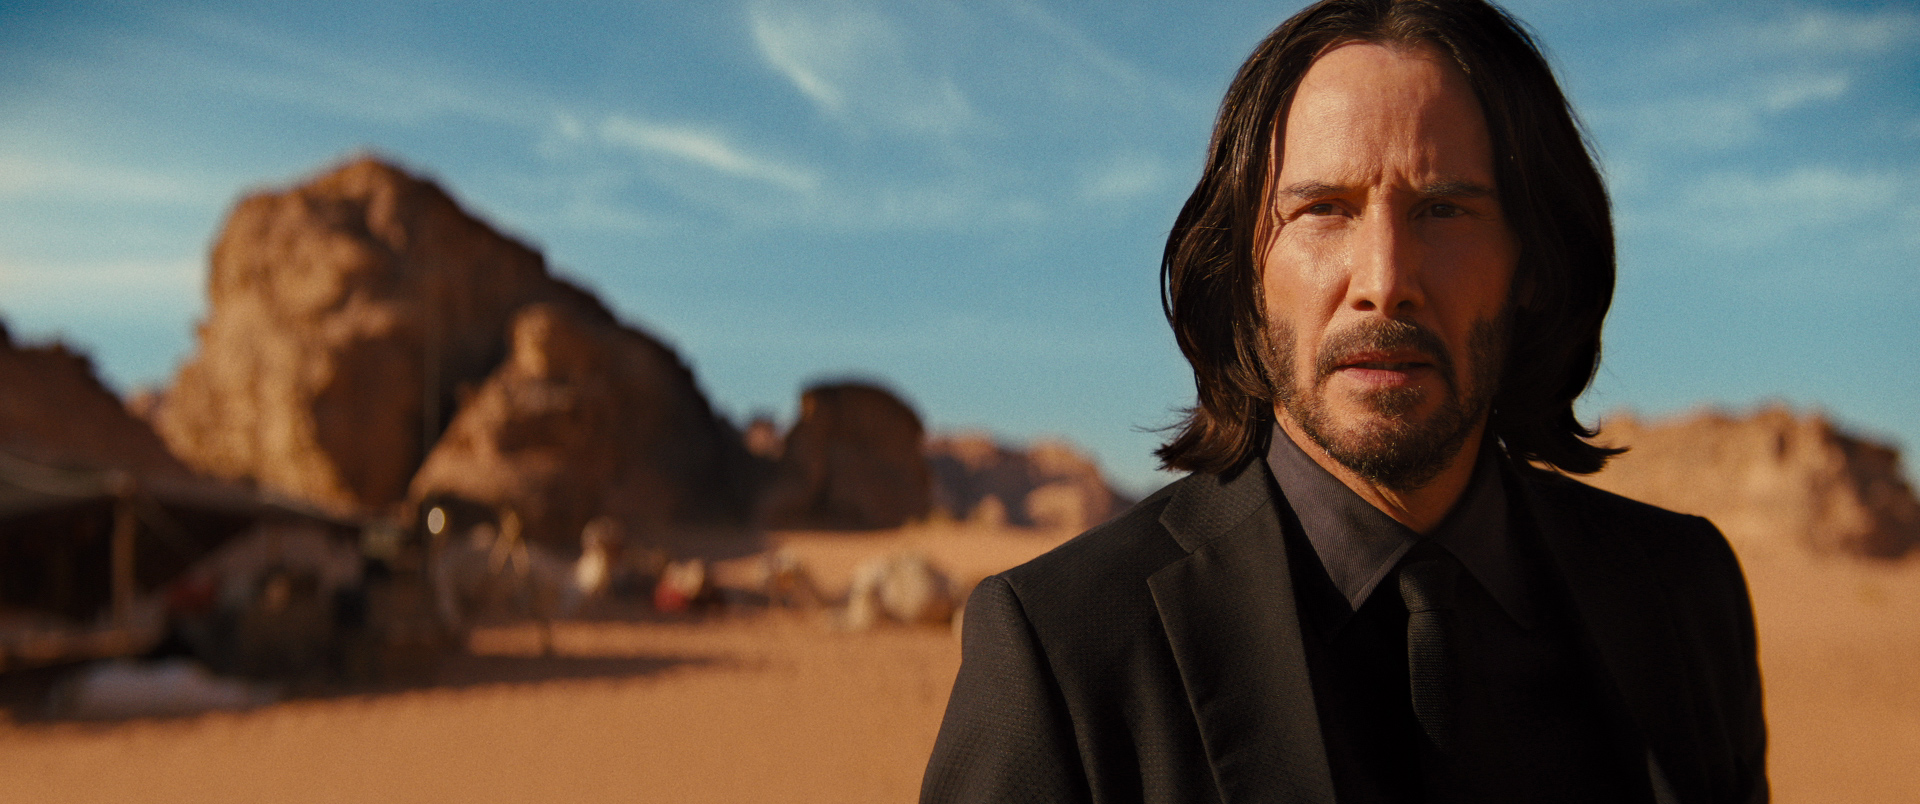 John Wick (Keanu Reeves) stands in a desert in Jordan in John Wick: Chapter 4